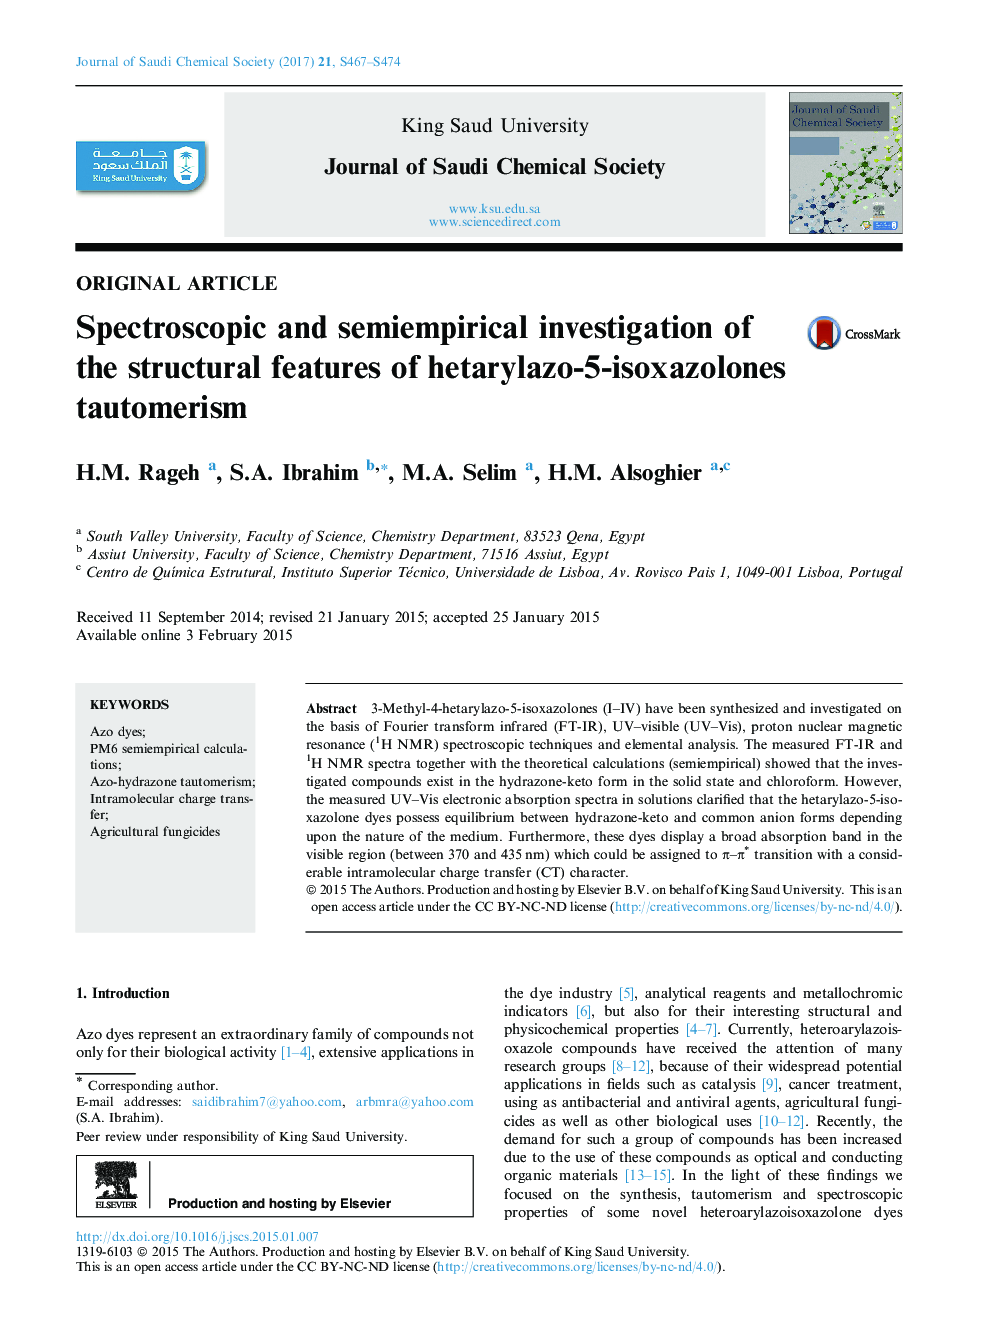 بررسی اسپکتروسکوپیک و نیمه تجربی ویژگی های ساختاری تیتوموریسم هیدرازازو 5-ایزوکسازولون 